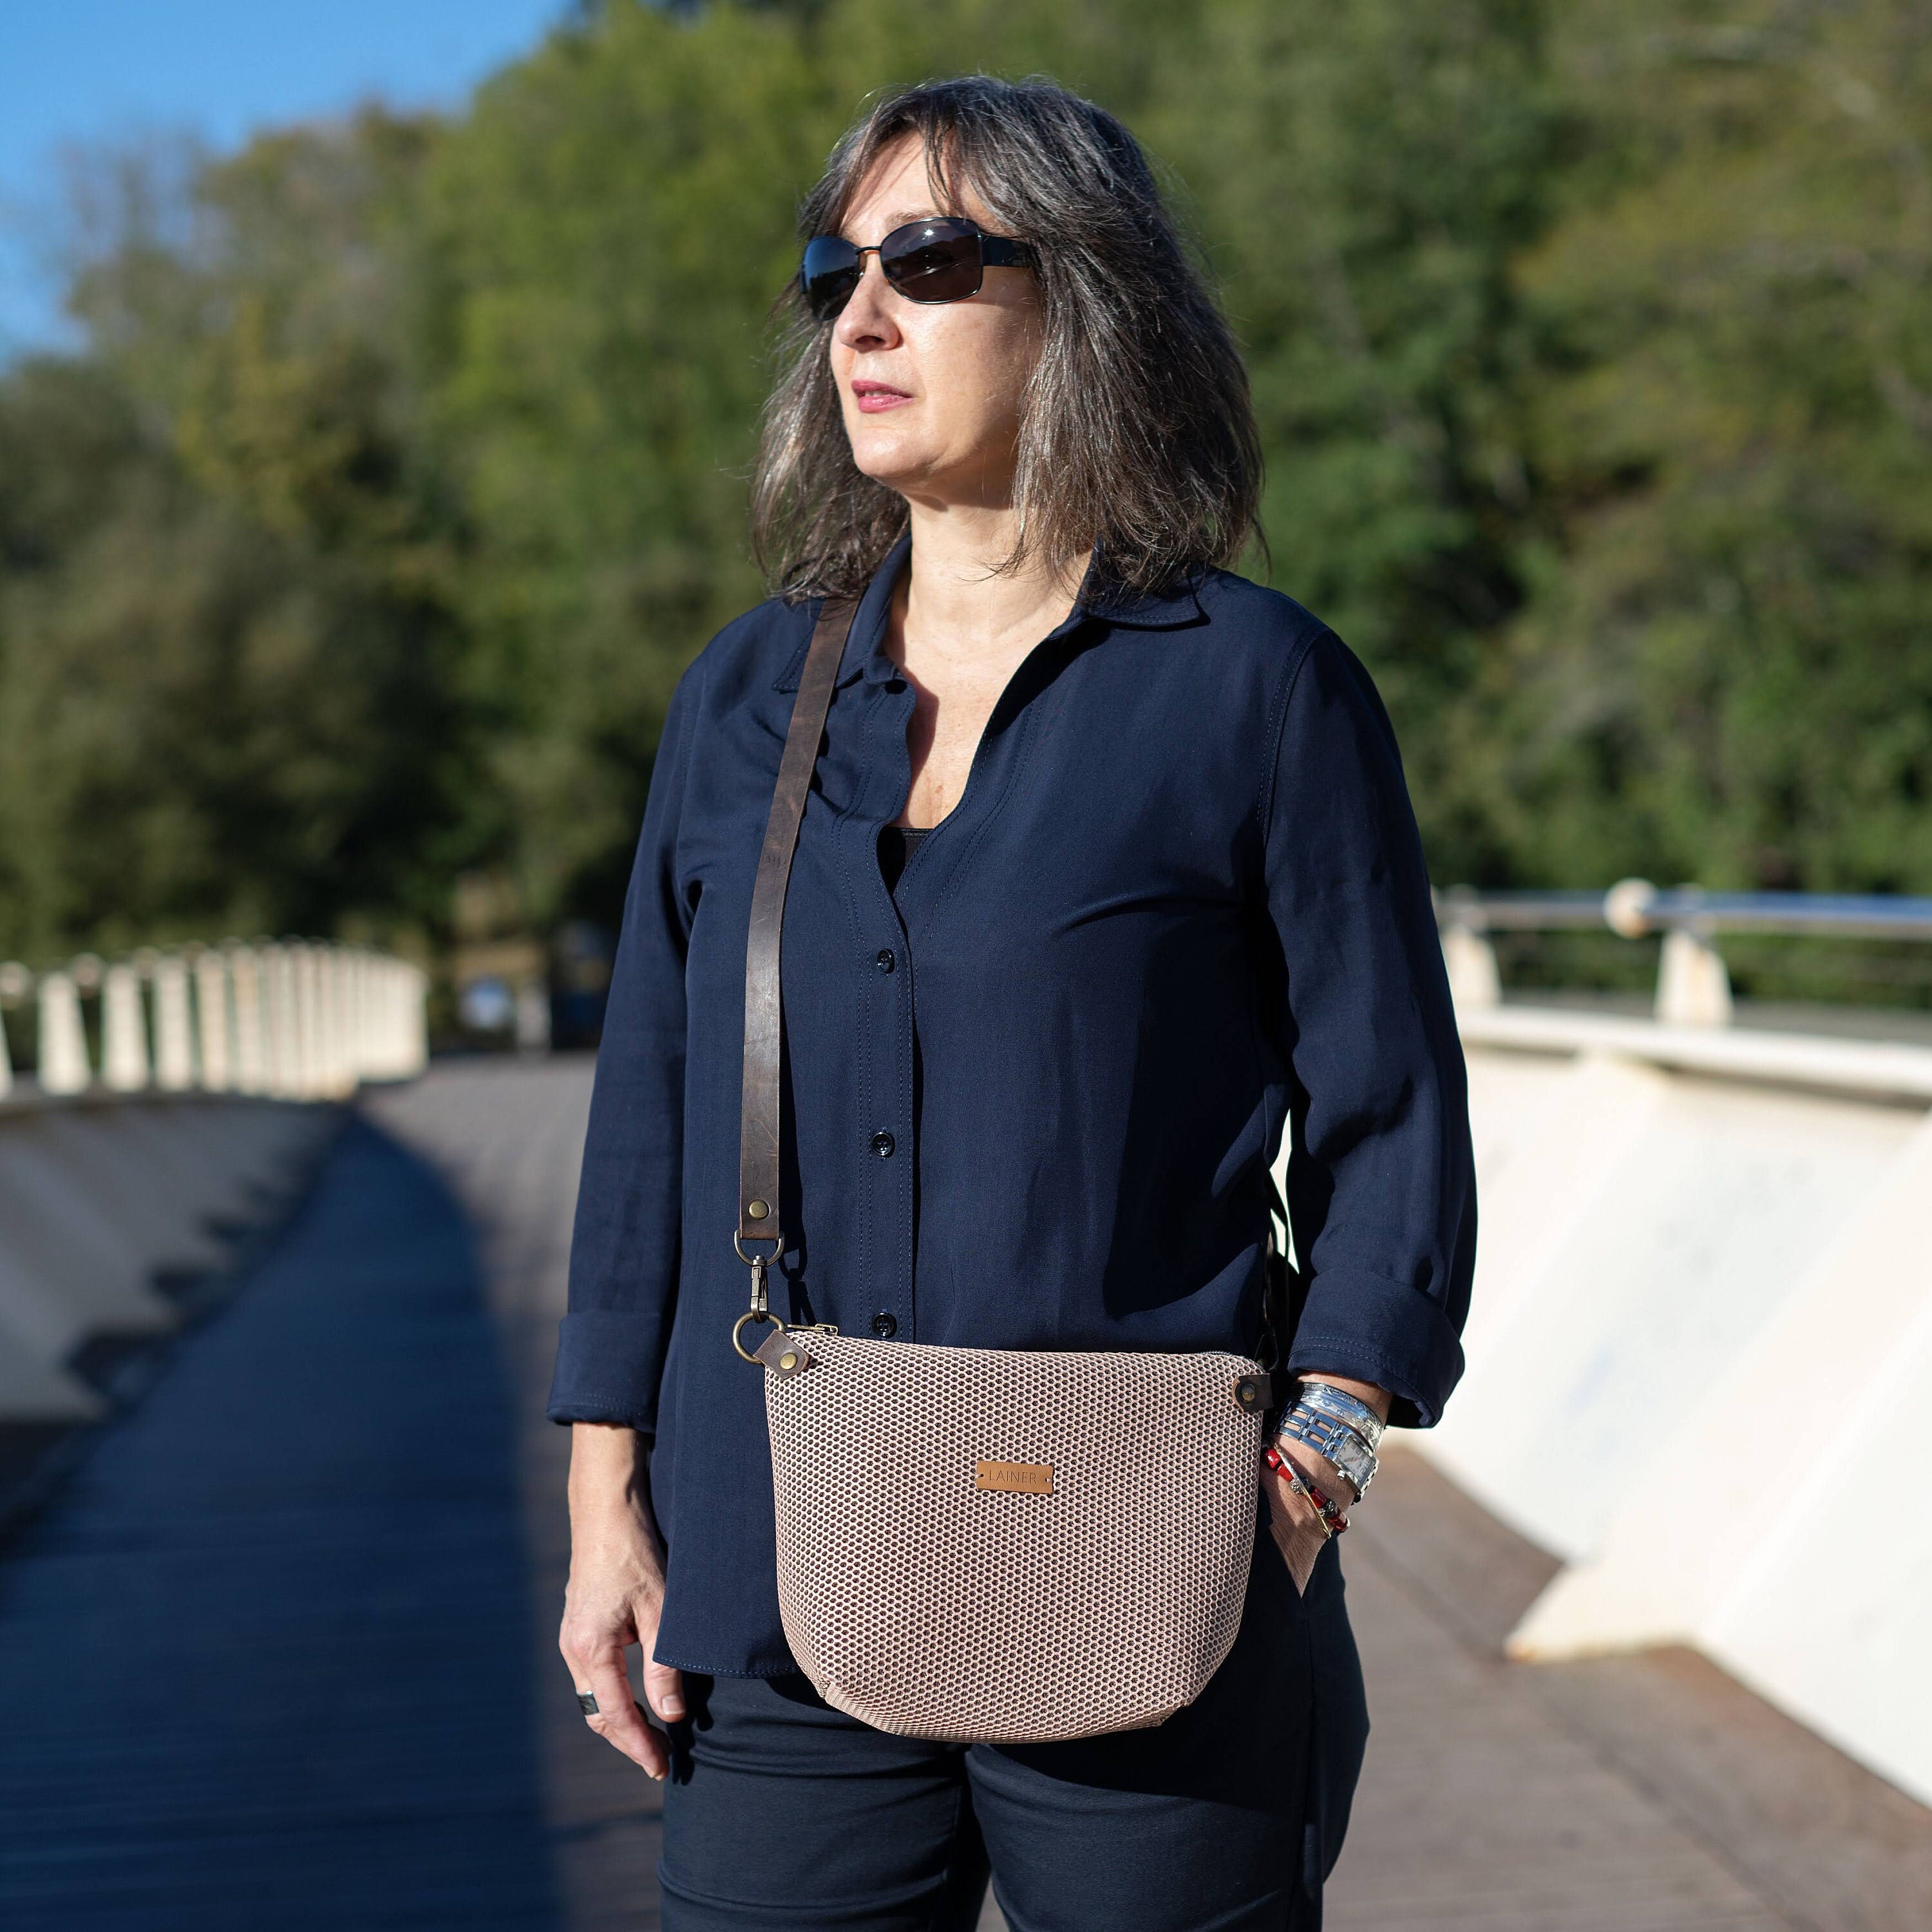 Buy URBAN BAG Impex Fabric Stylish & Trendy Handbag for Women